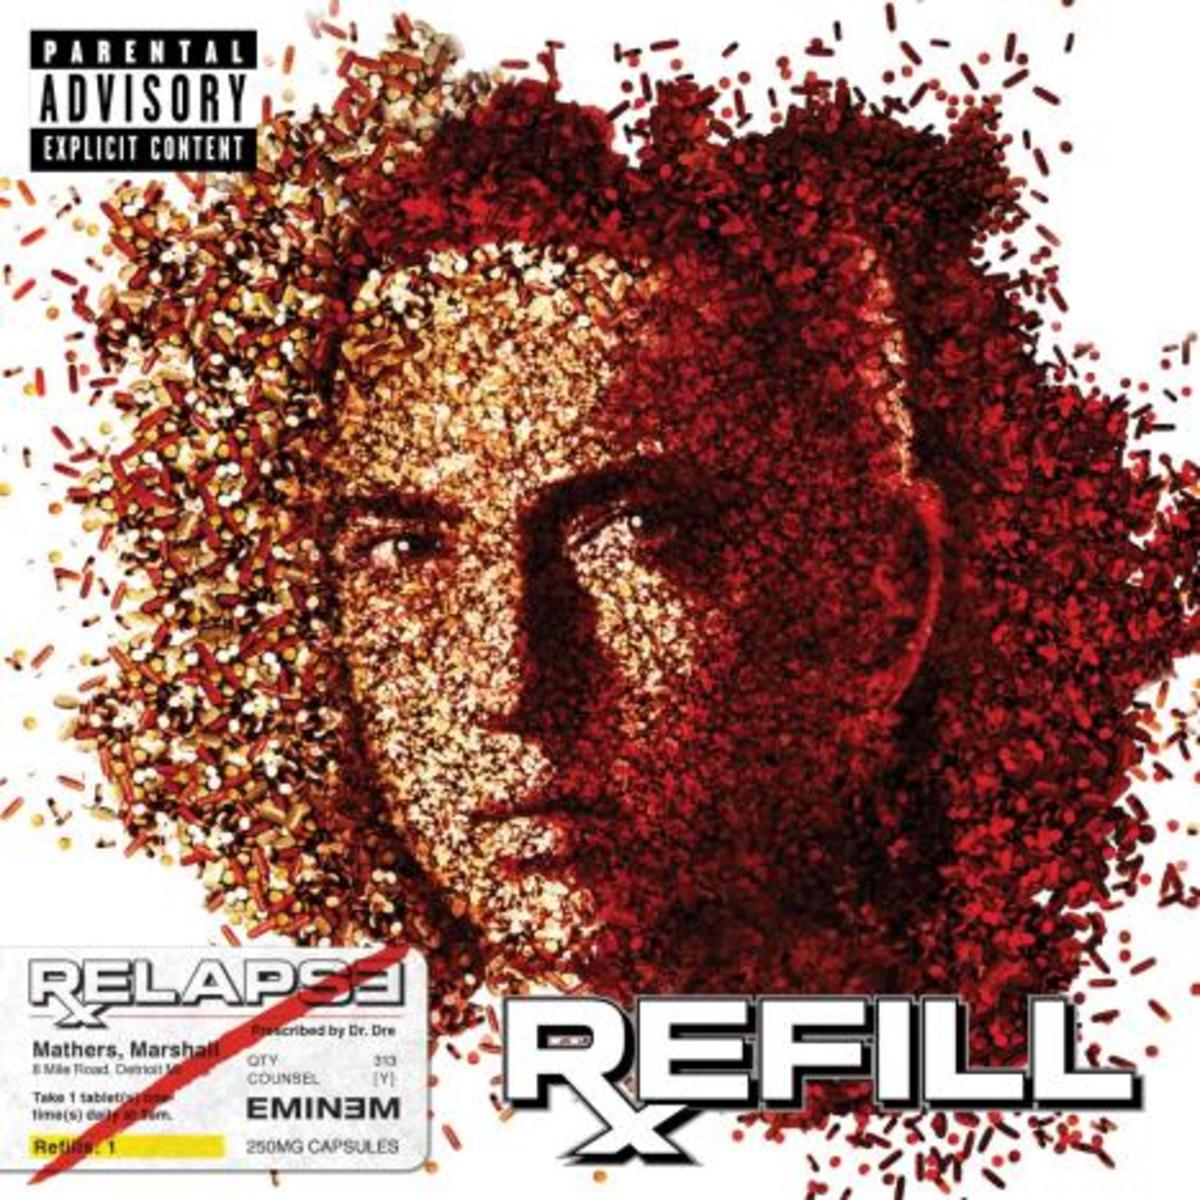 Eminem - "Relapse: Refill"